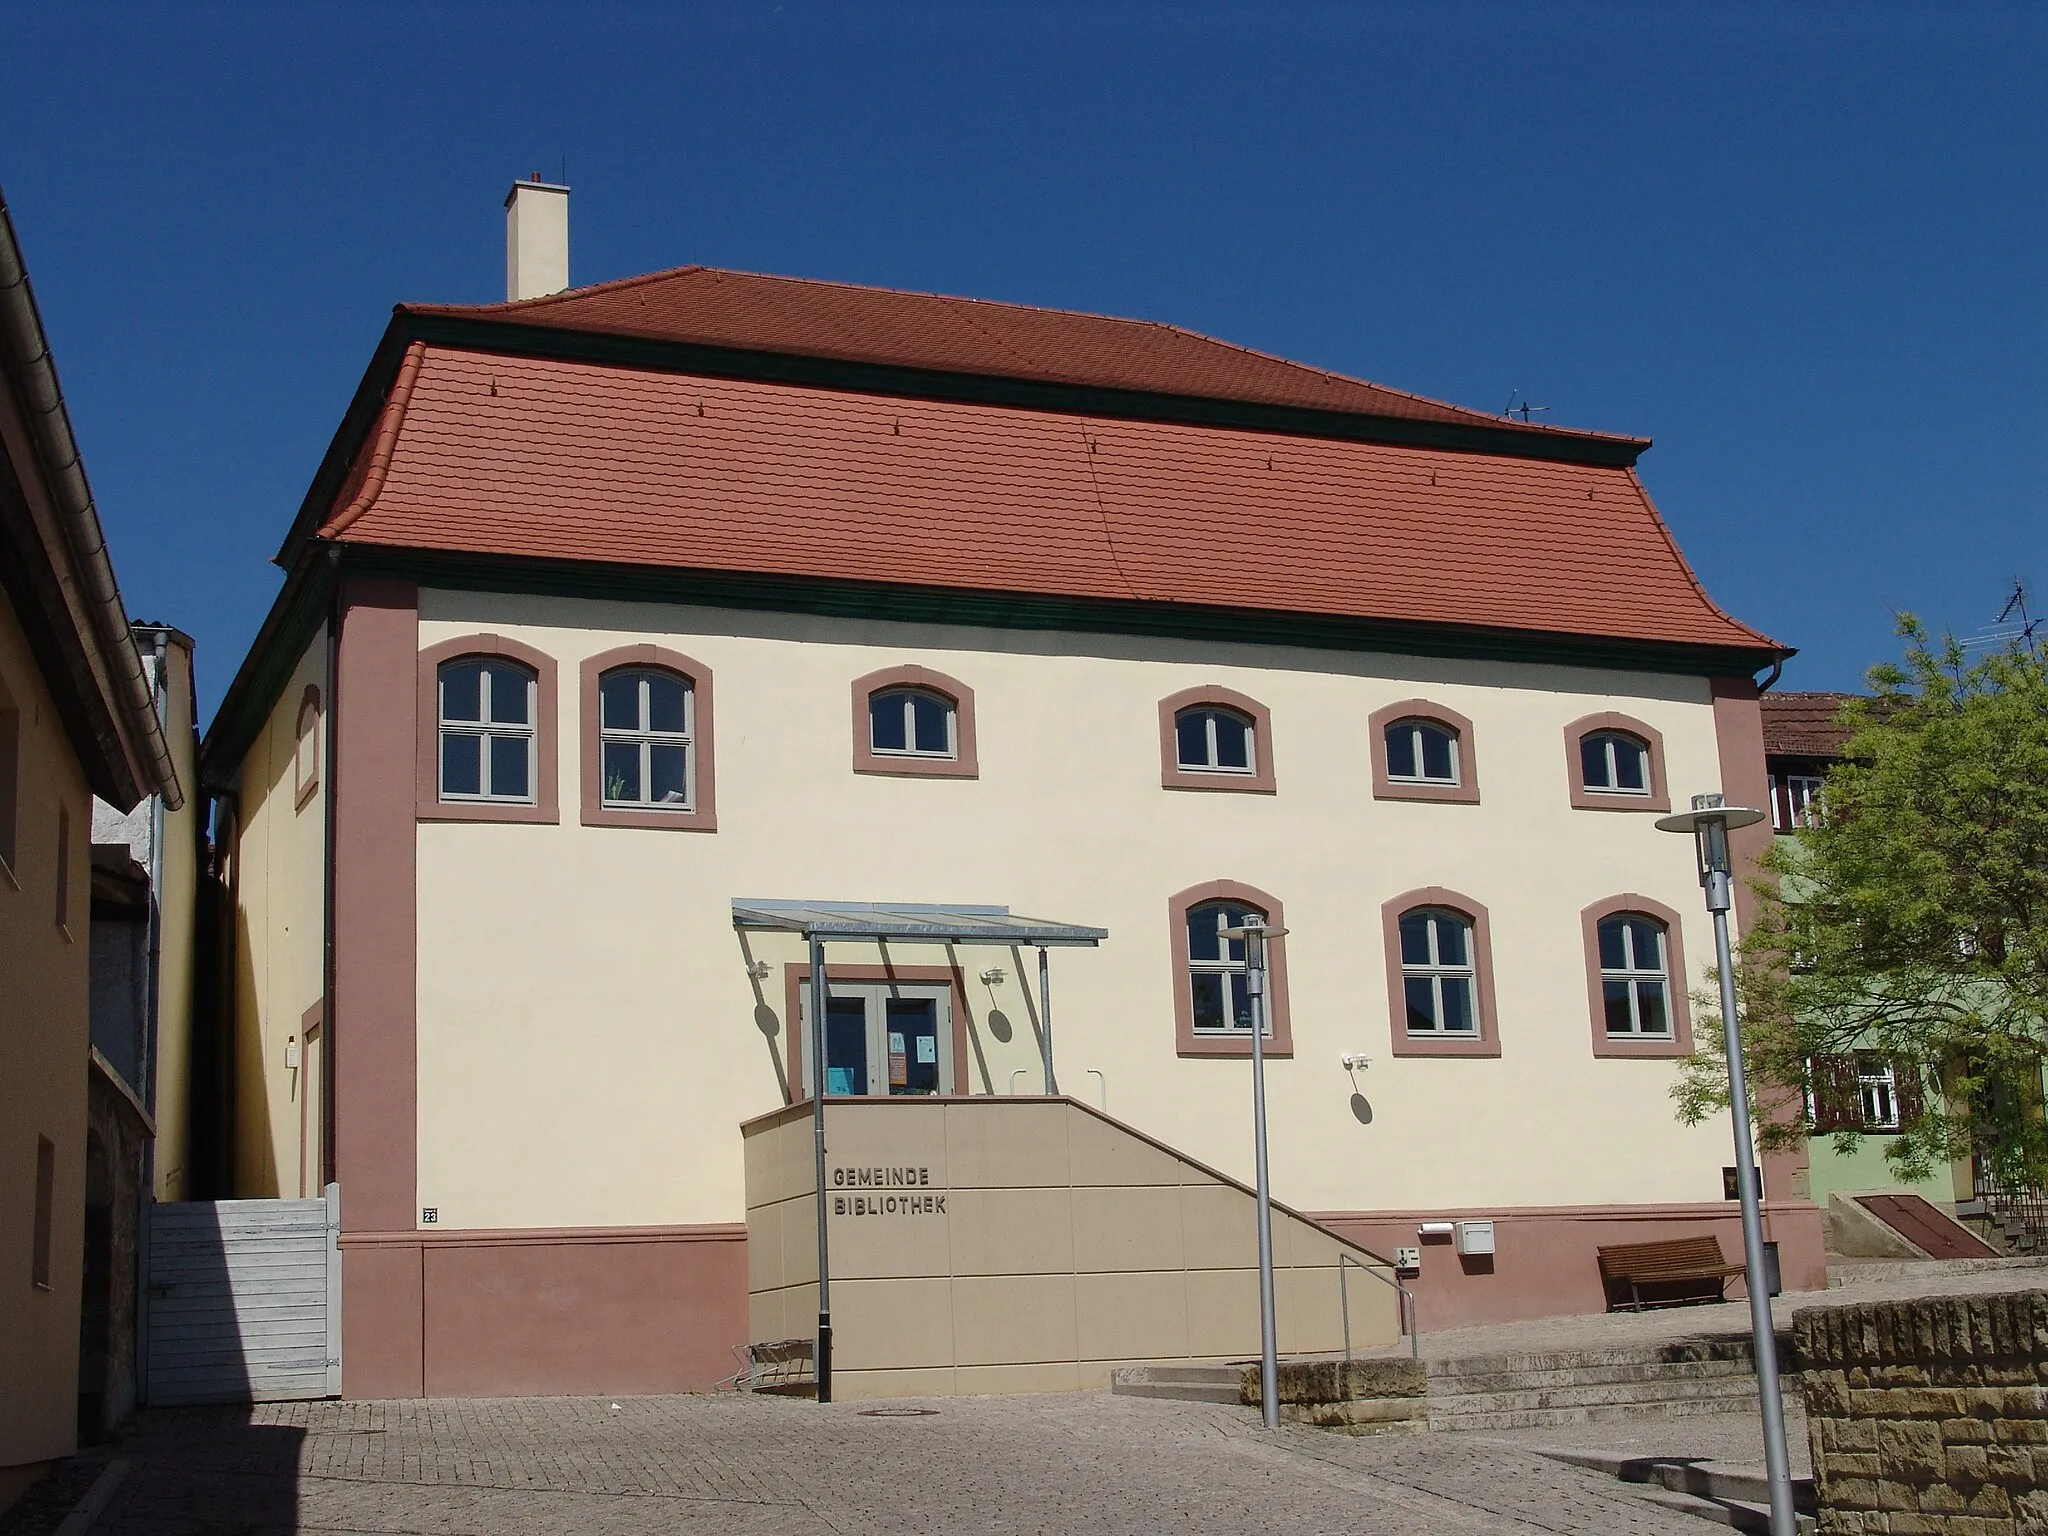 Photo showing: Niederwerrn - ehemalige Synagoge, heute Gemeindebibliothek

ehemalige Synagoge